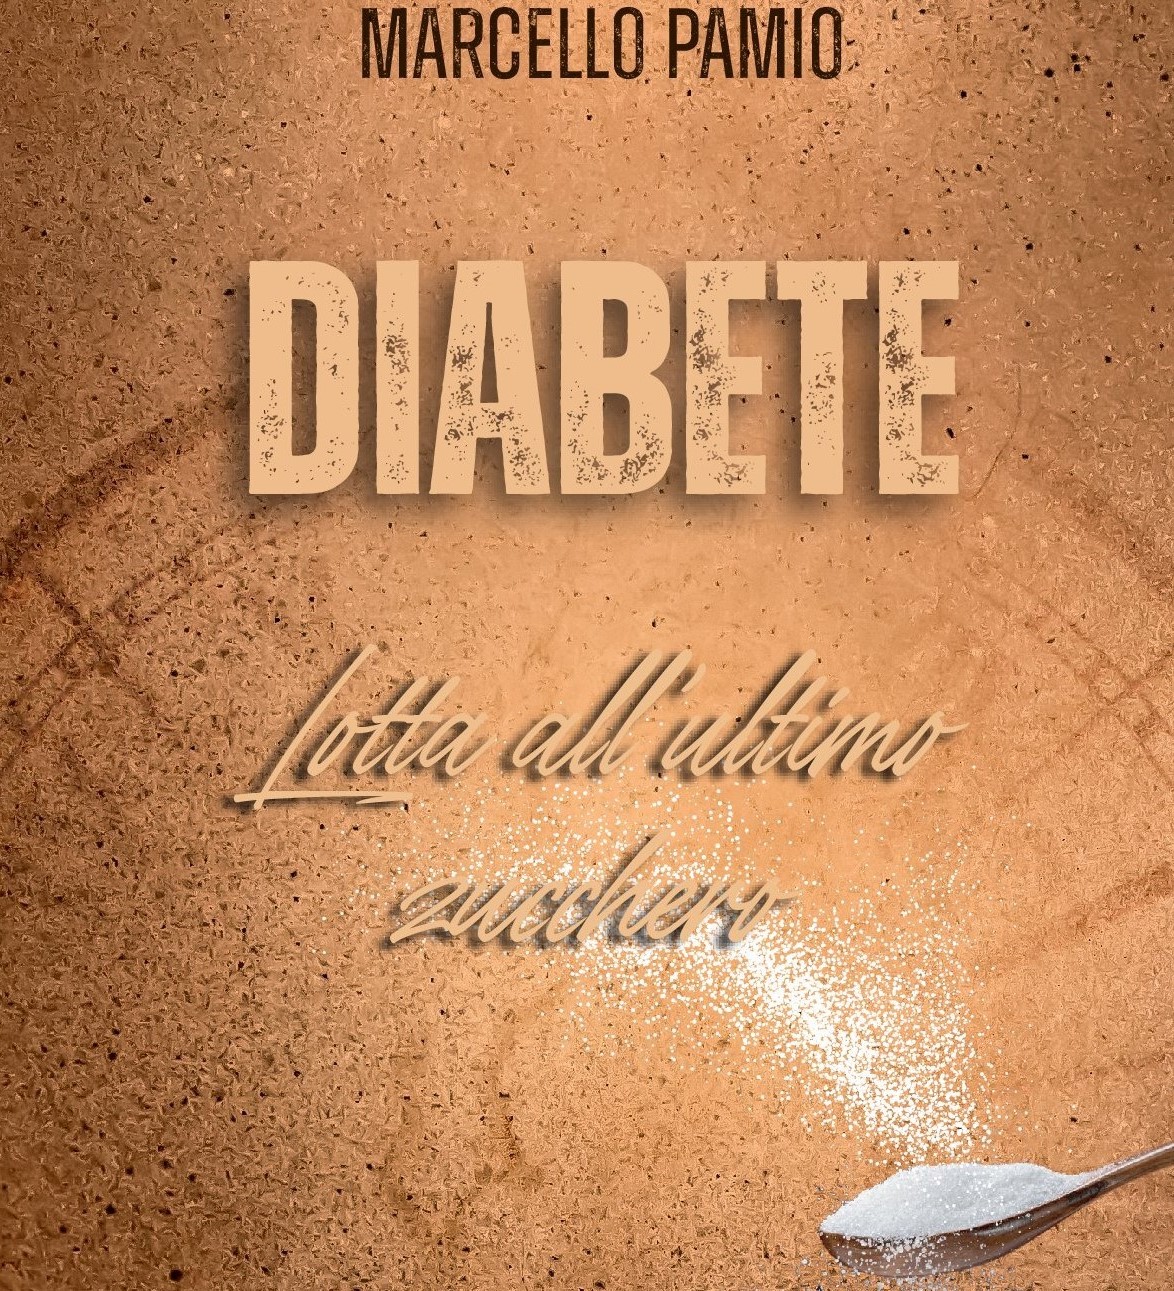 Conferenza: Diabete - lotta all'ultimo zucchero